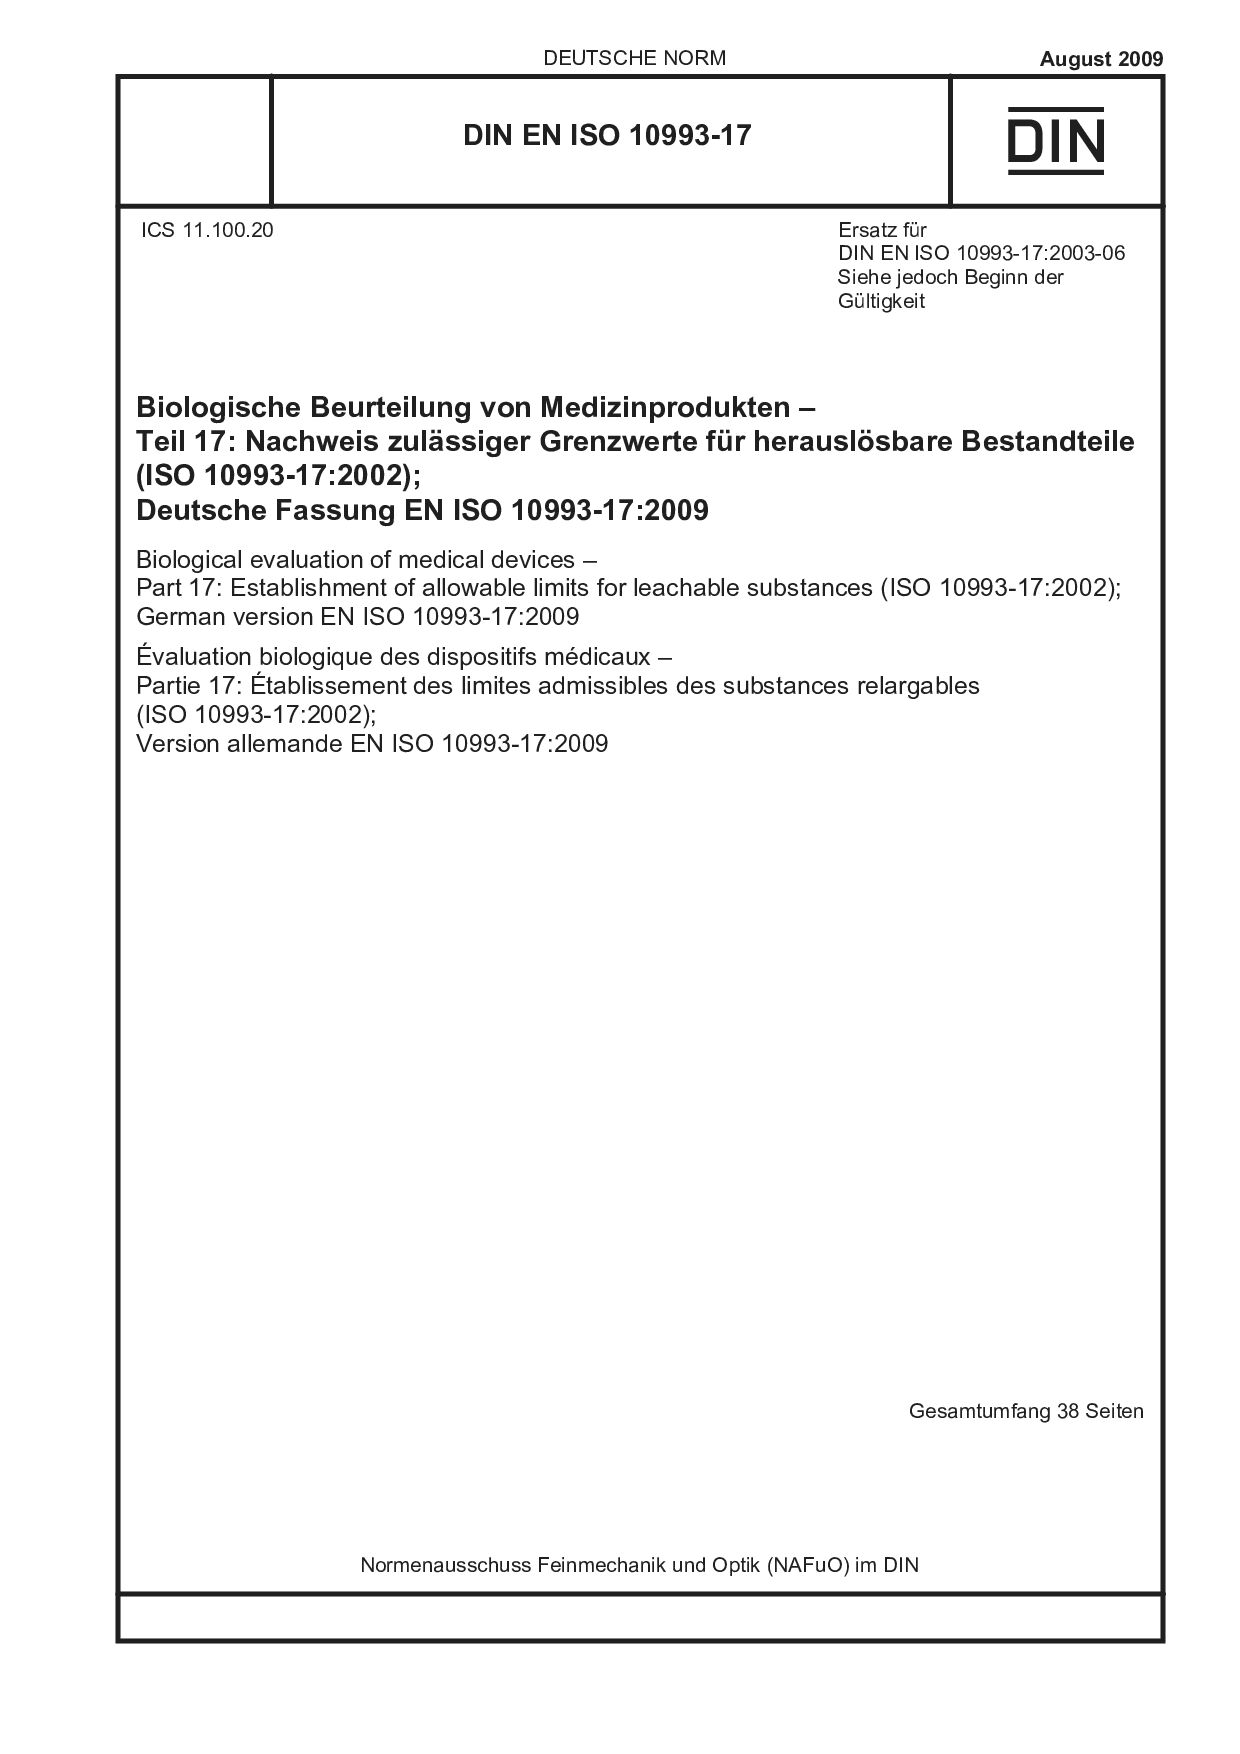 DIN EN ISO 10993-17:2009